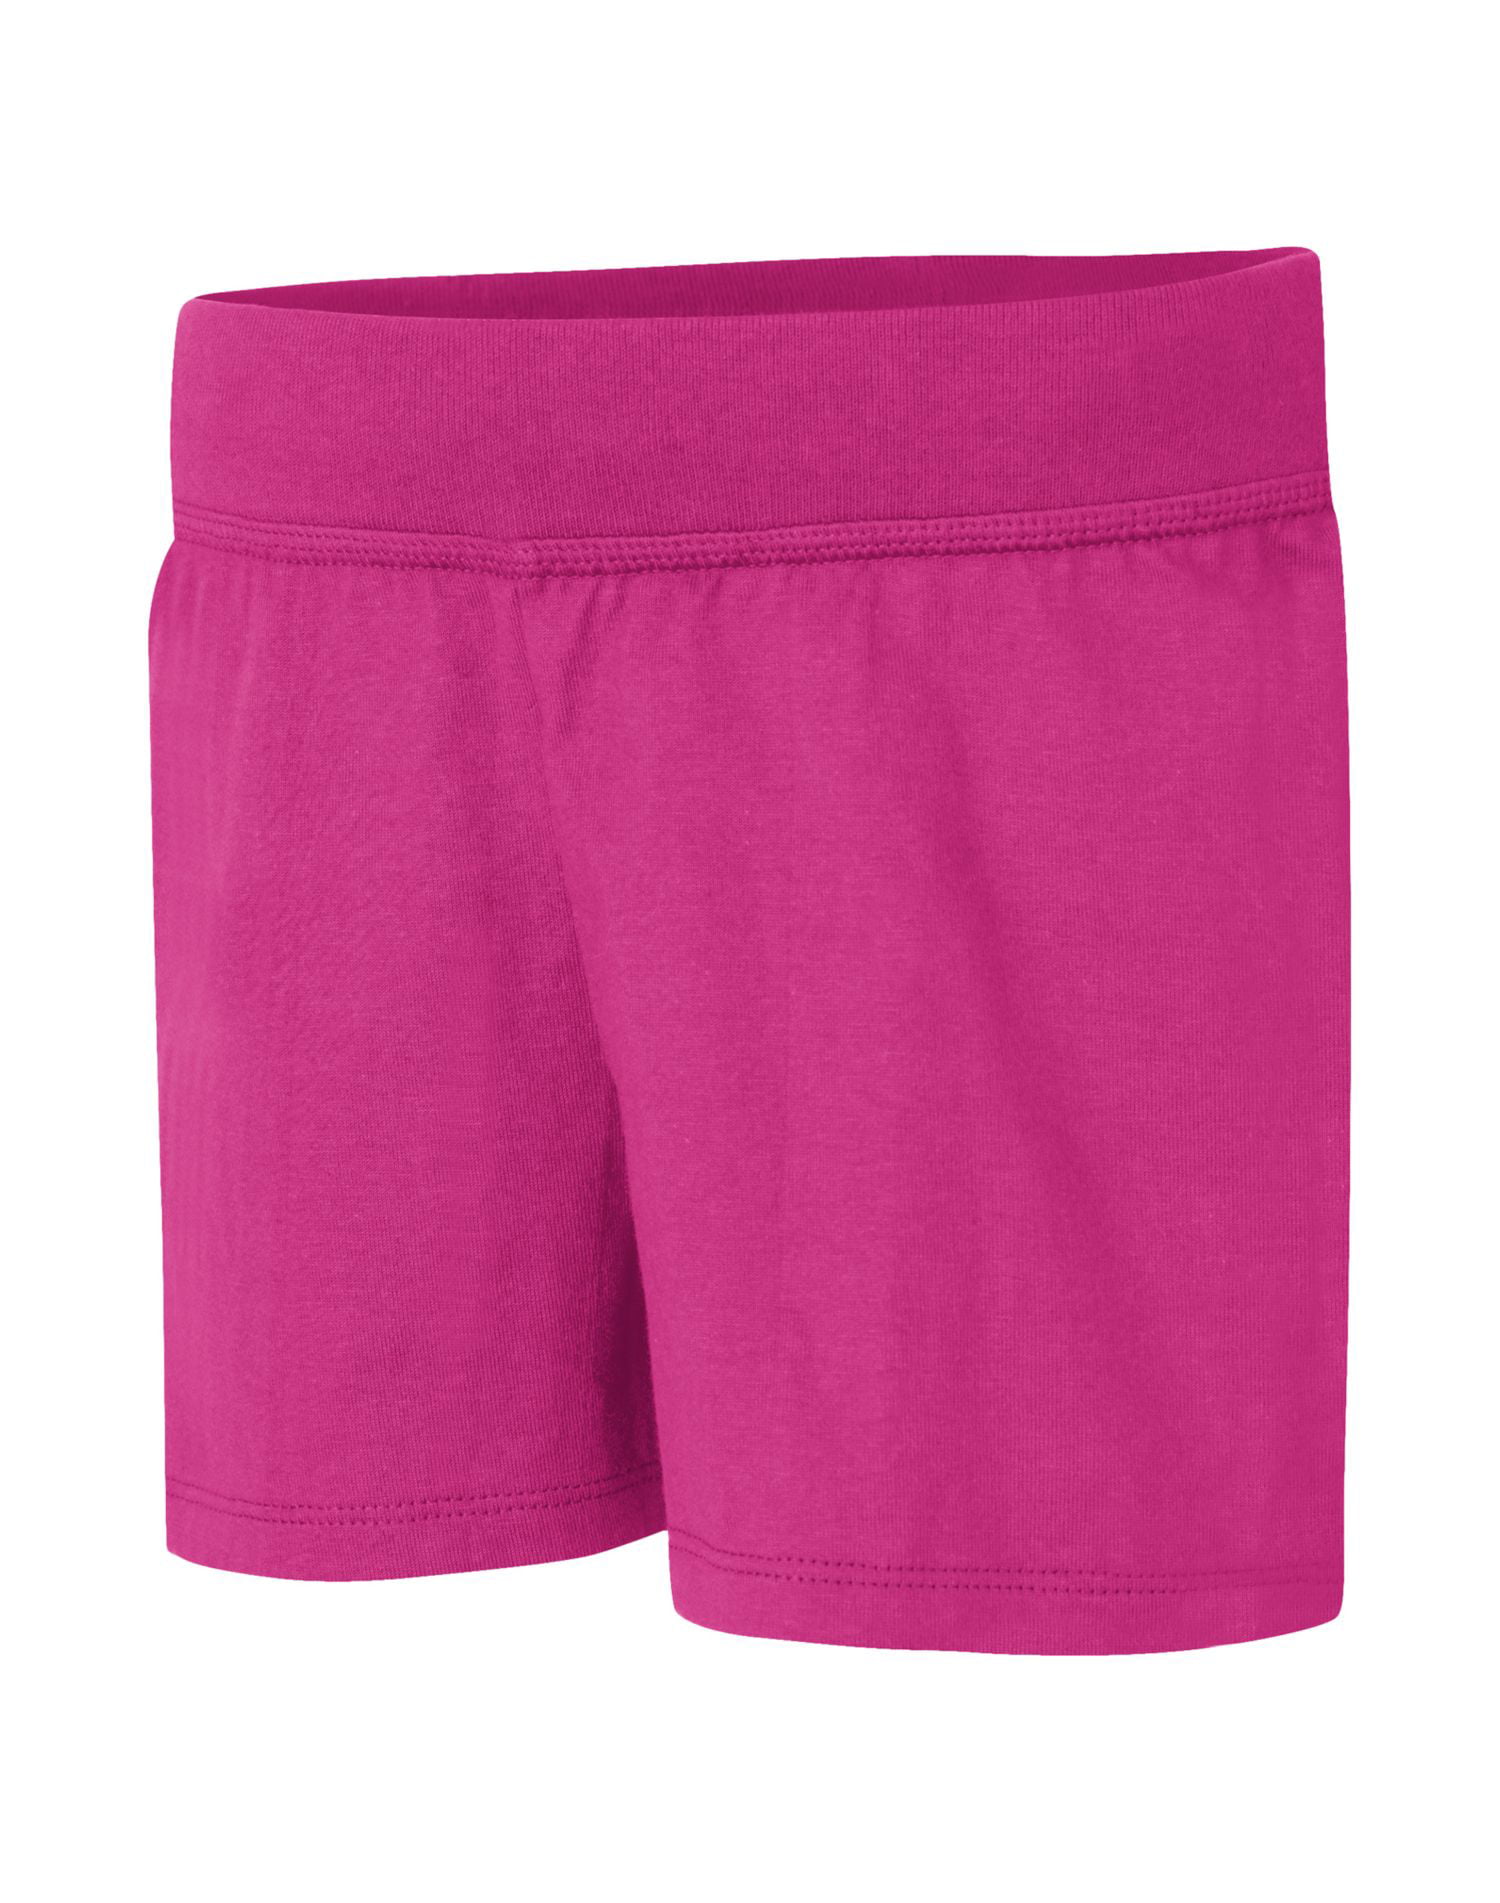 Hanes Girls' Jersey Short(Little Girls & Big Girls) - Walmart.com